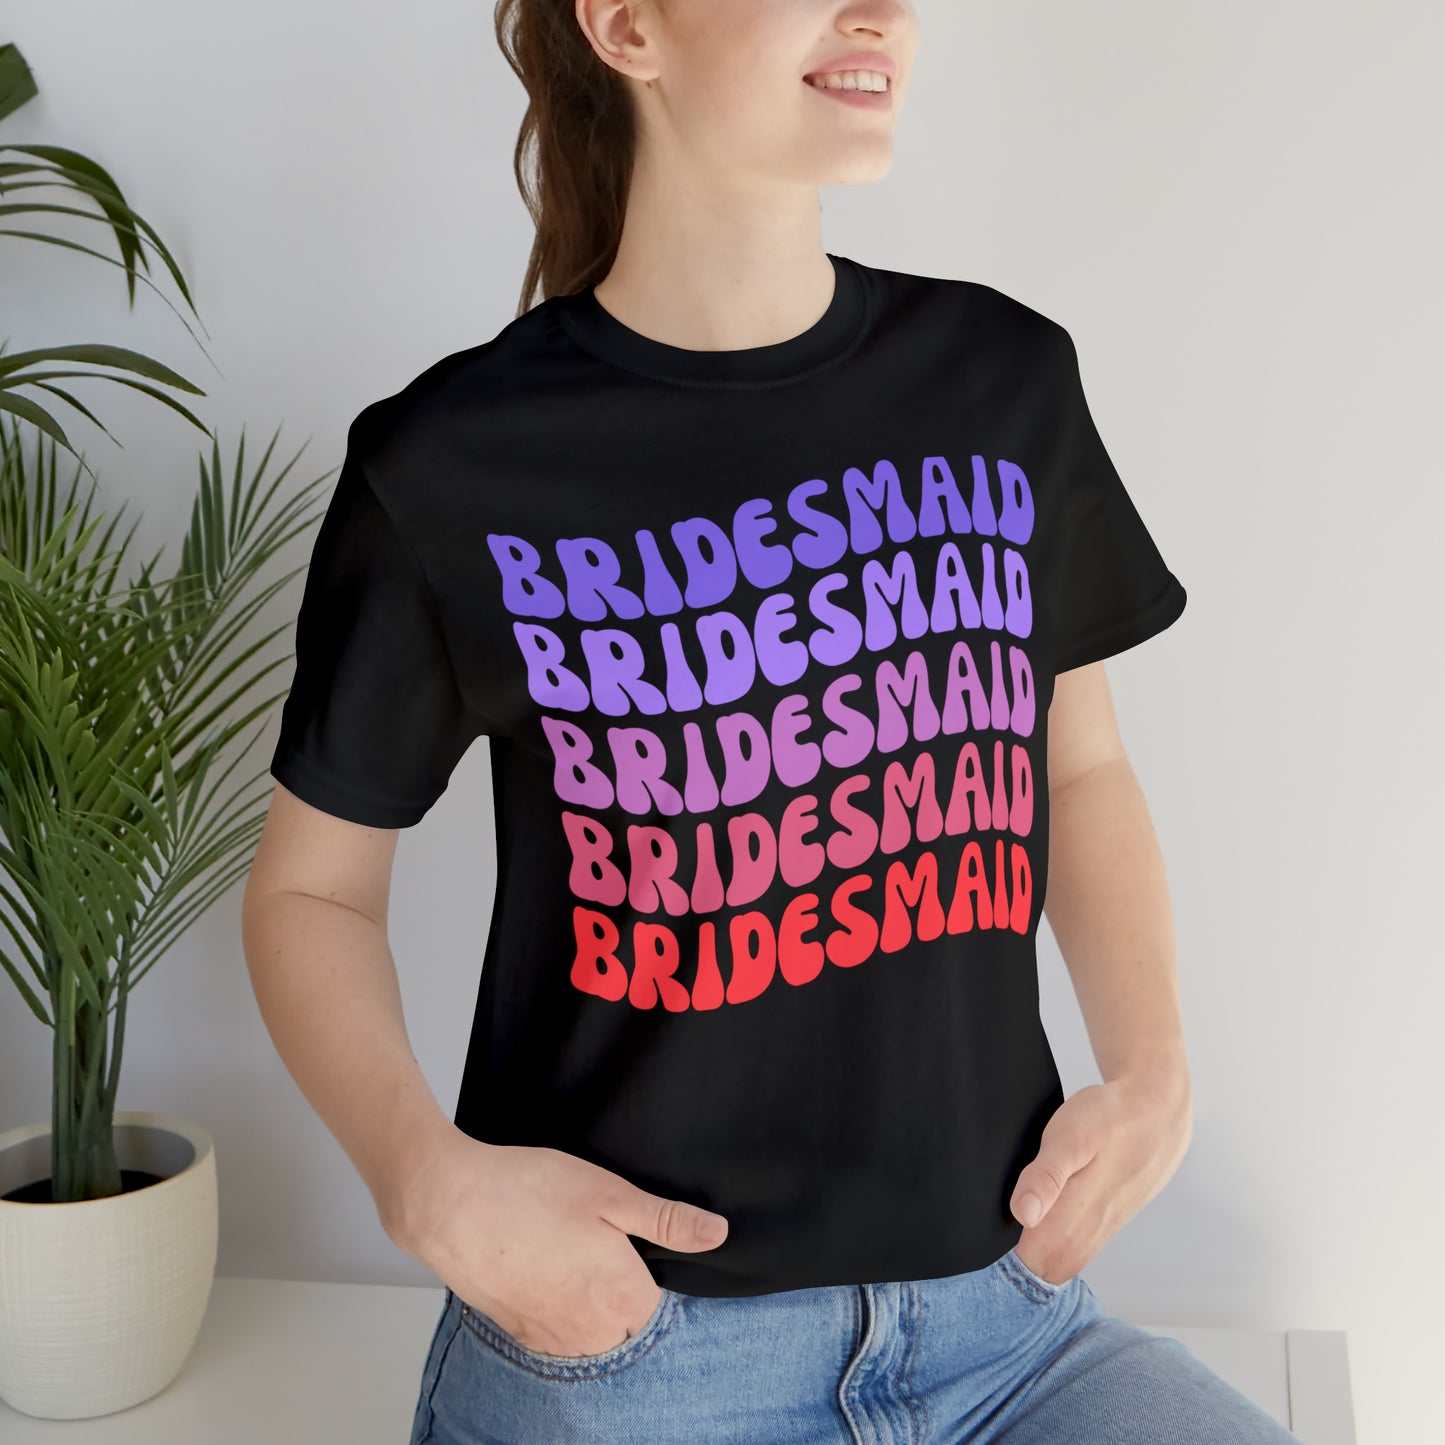 Retro Bridesmaid TShirt, Bridesmaid Shirt for Women, T286